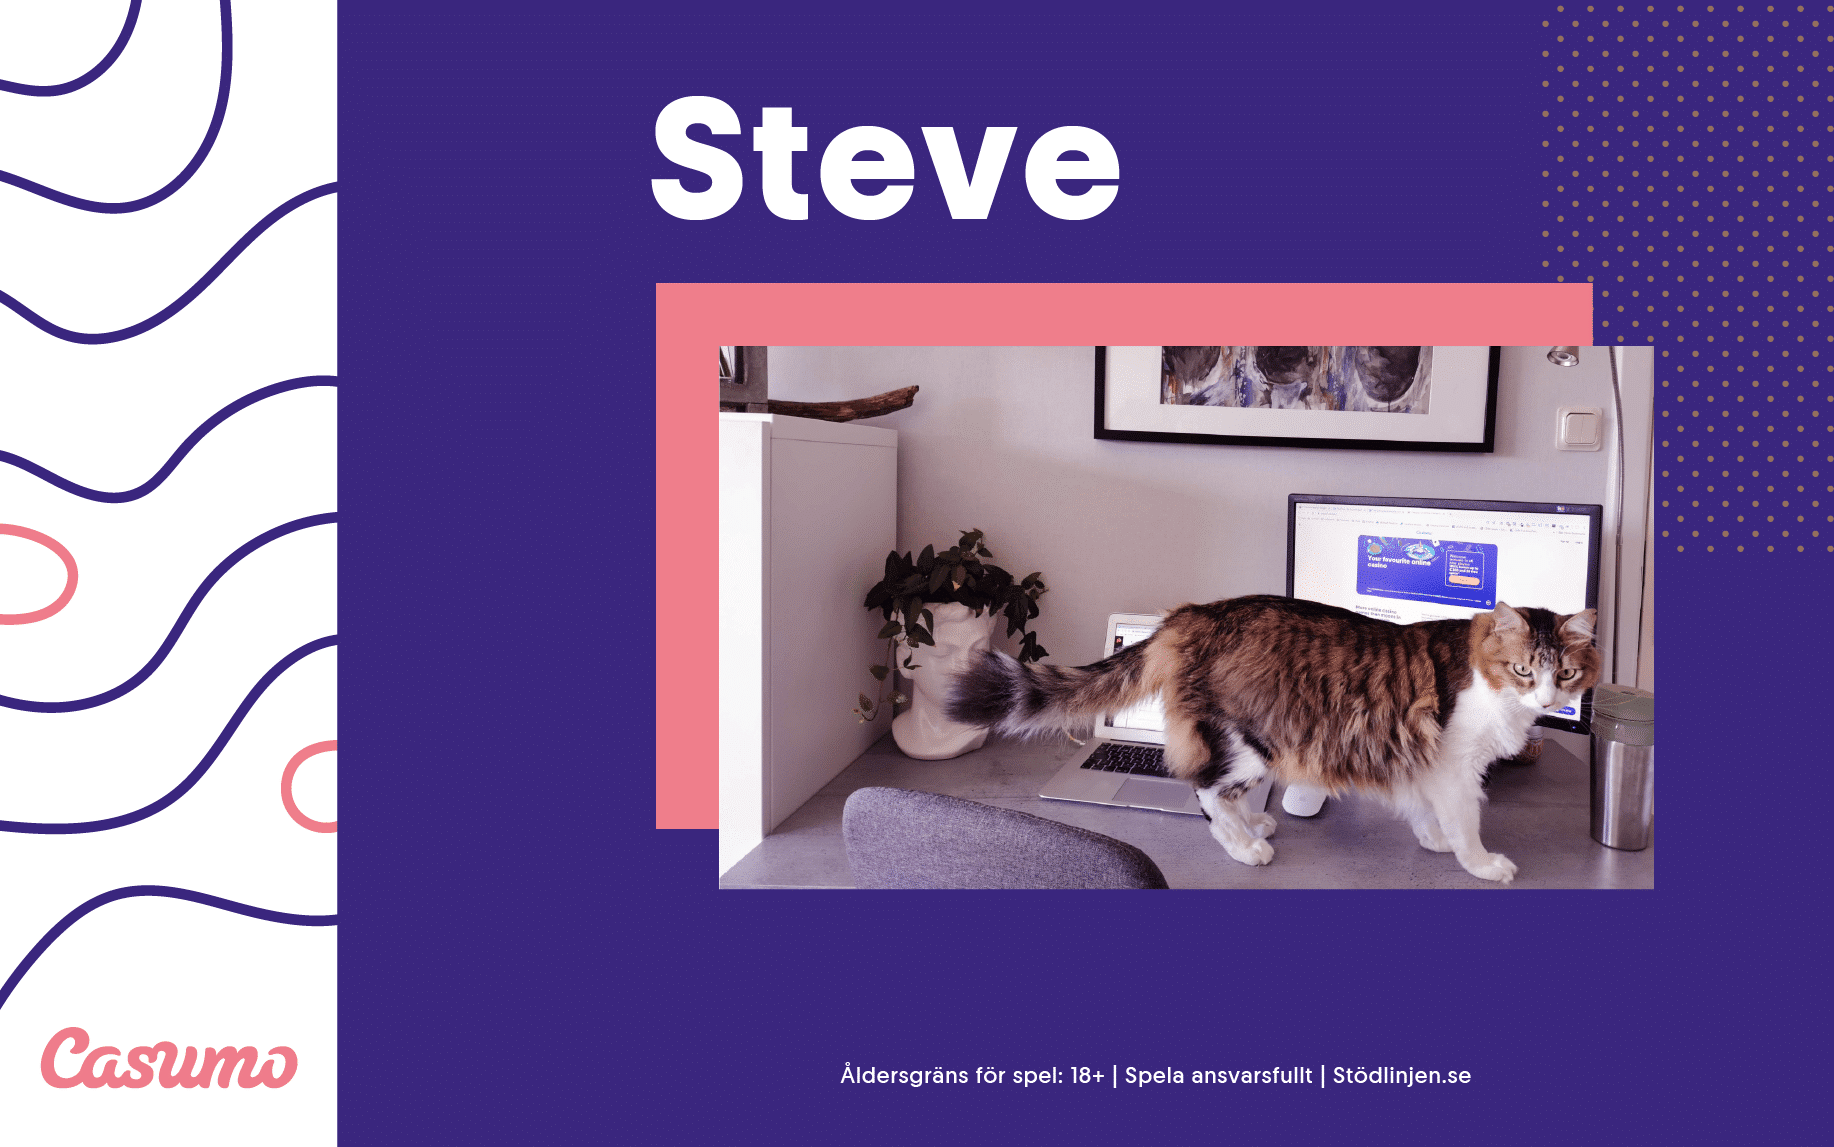 |Steve ger tips på hur man jobbar hemifrån effektivt.